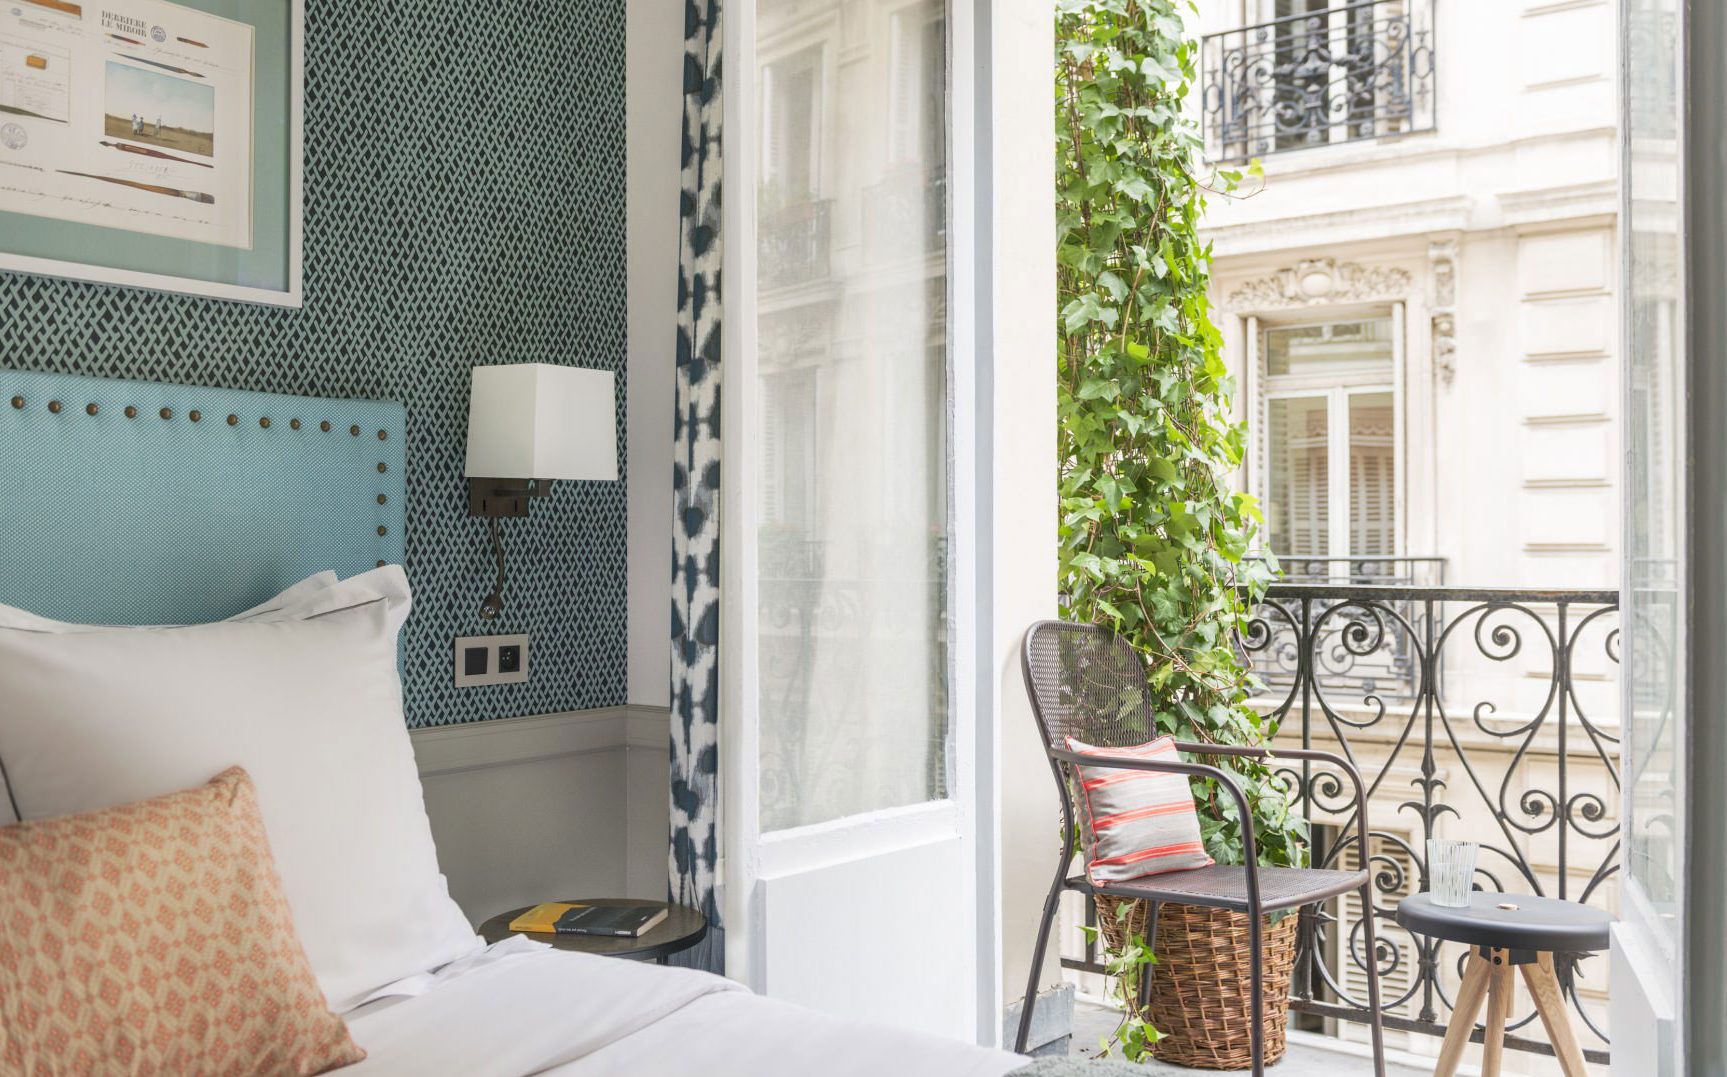 Boetiekhotel Hôtel Adèle & Jules overnachting in Parijs tip